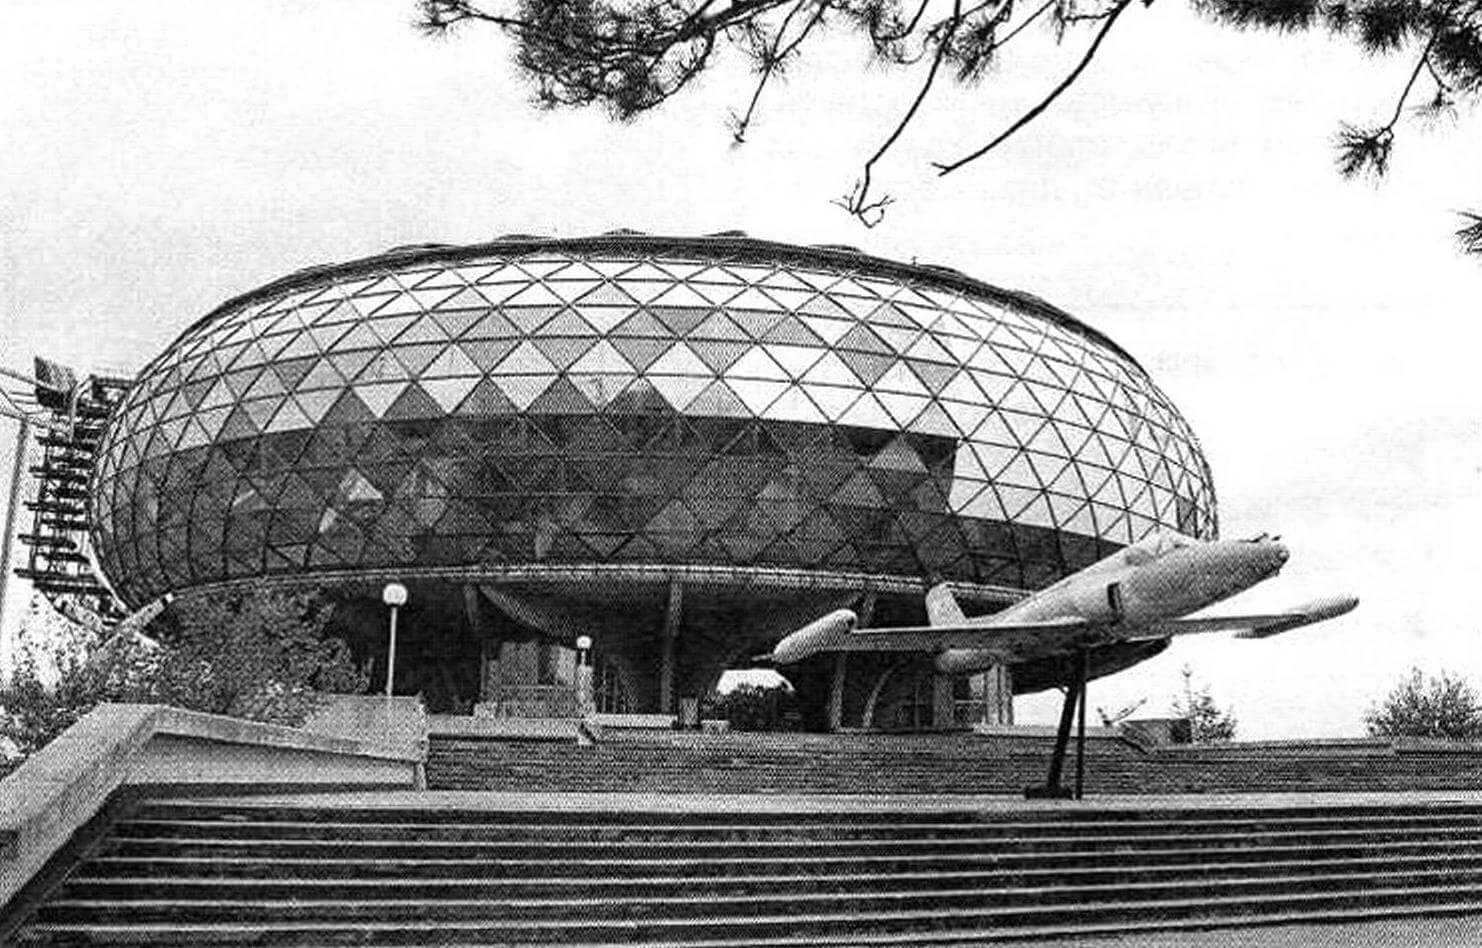 Здание авиационного музея в Белграде отличается оригинальной архитектурой